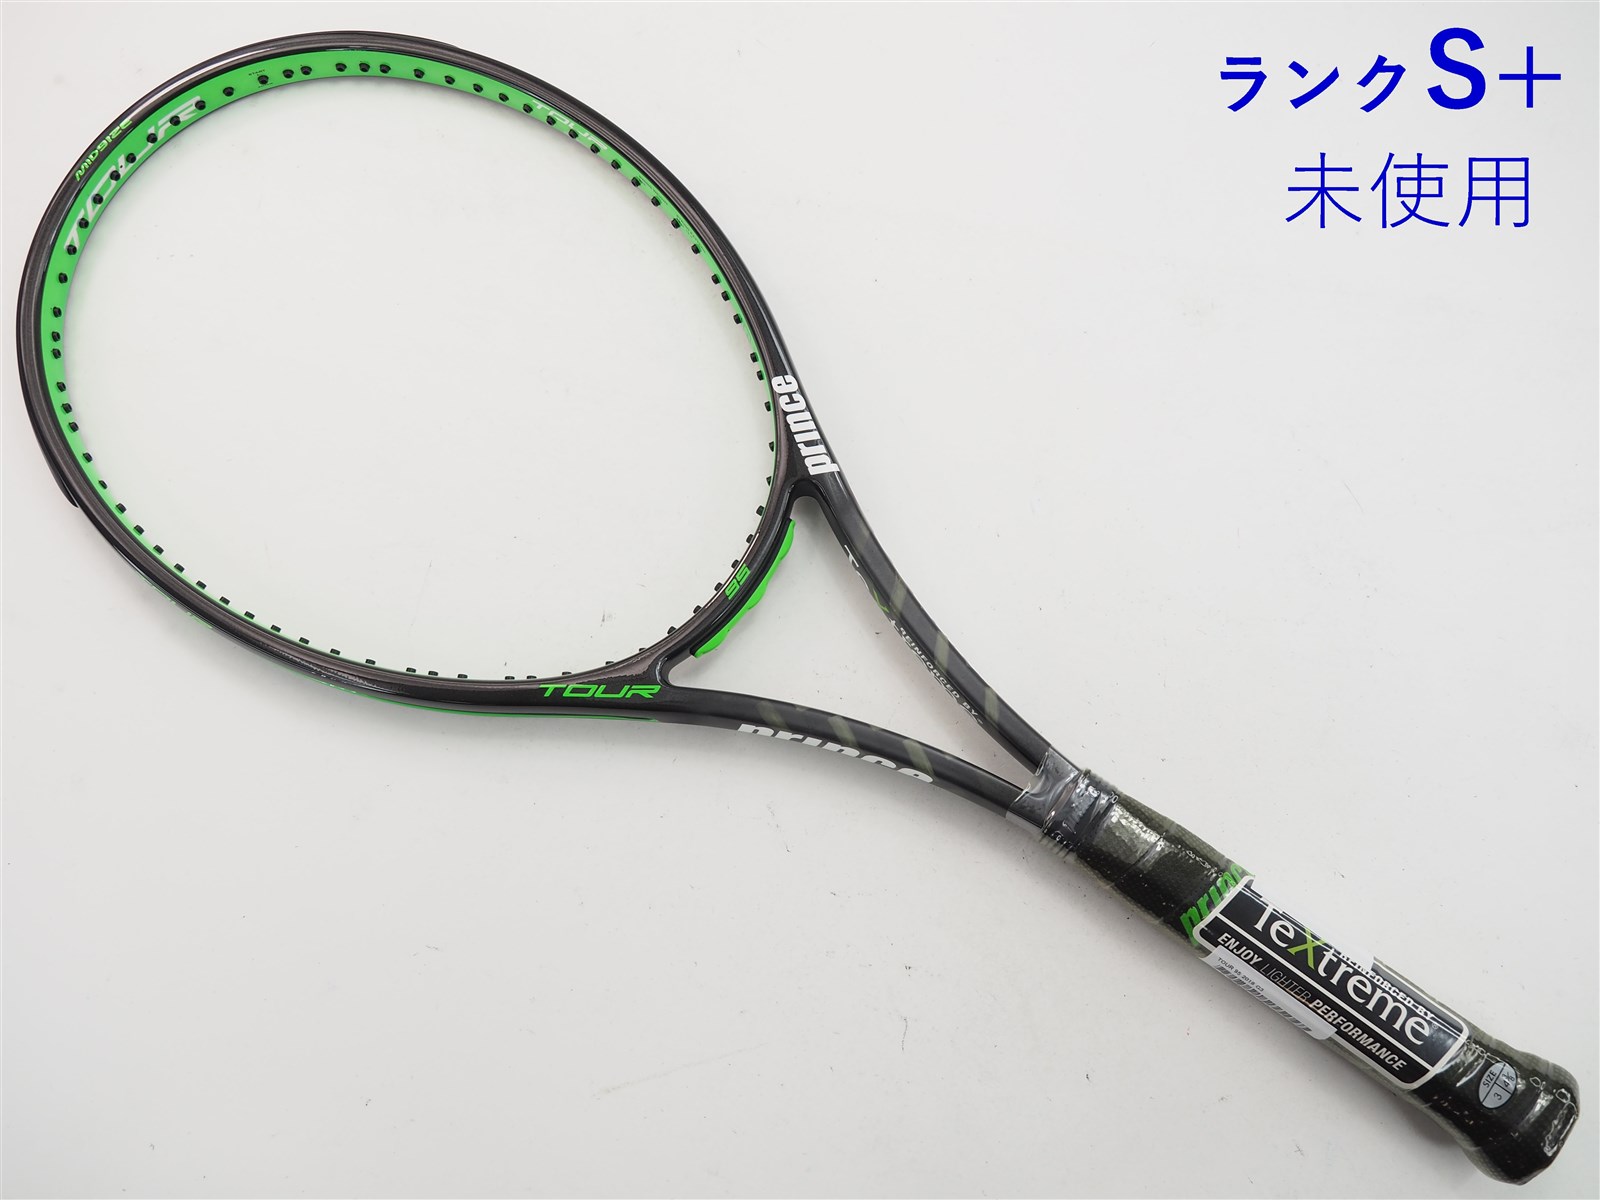 テニスラケット プリンス ツアー 100(290g) 2020年モデル【一部グロメット割れ有り】 (G2)PRINCE TOUR 100(290g) 2020G2装着グリップ